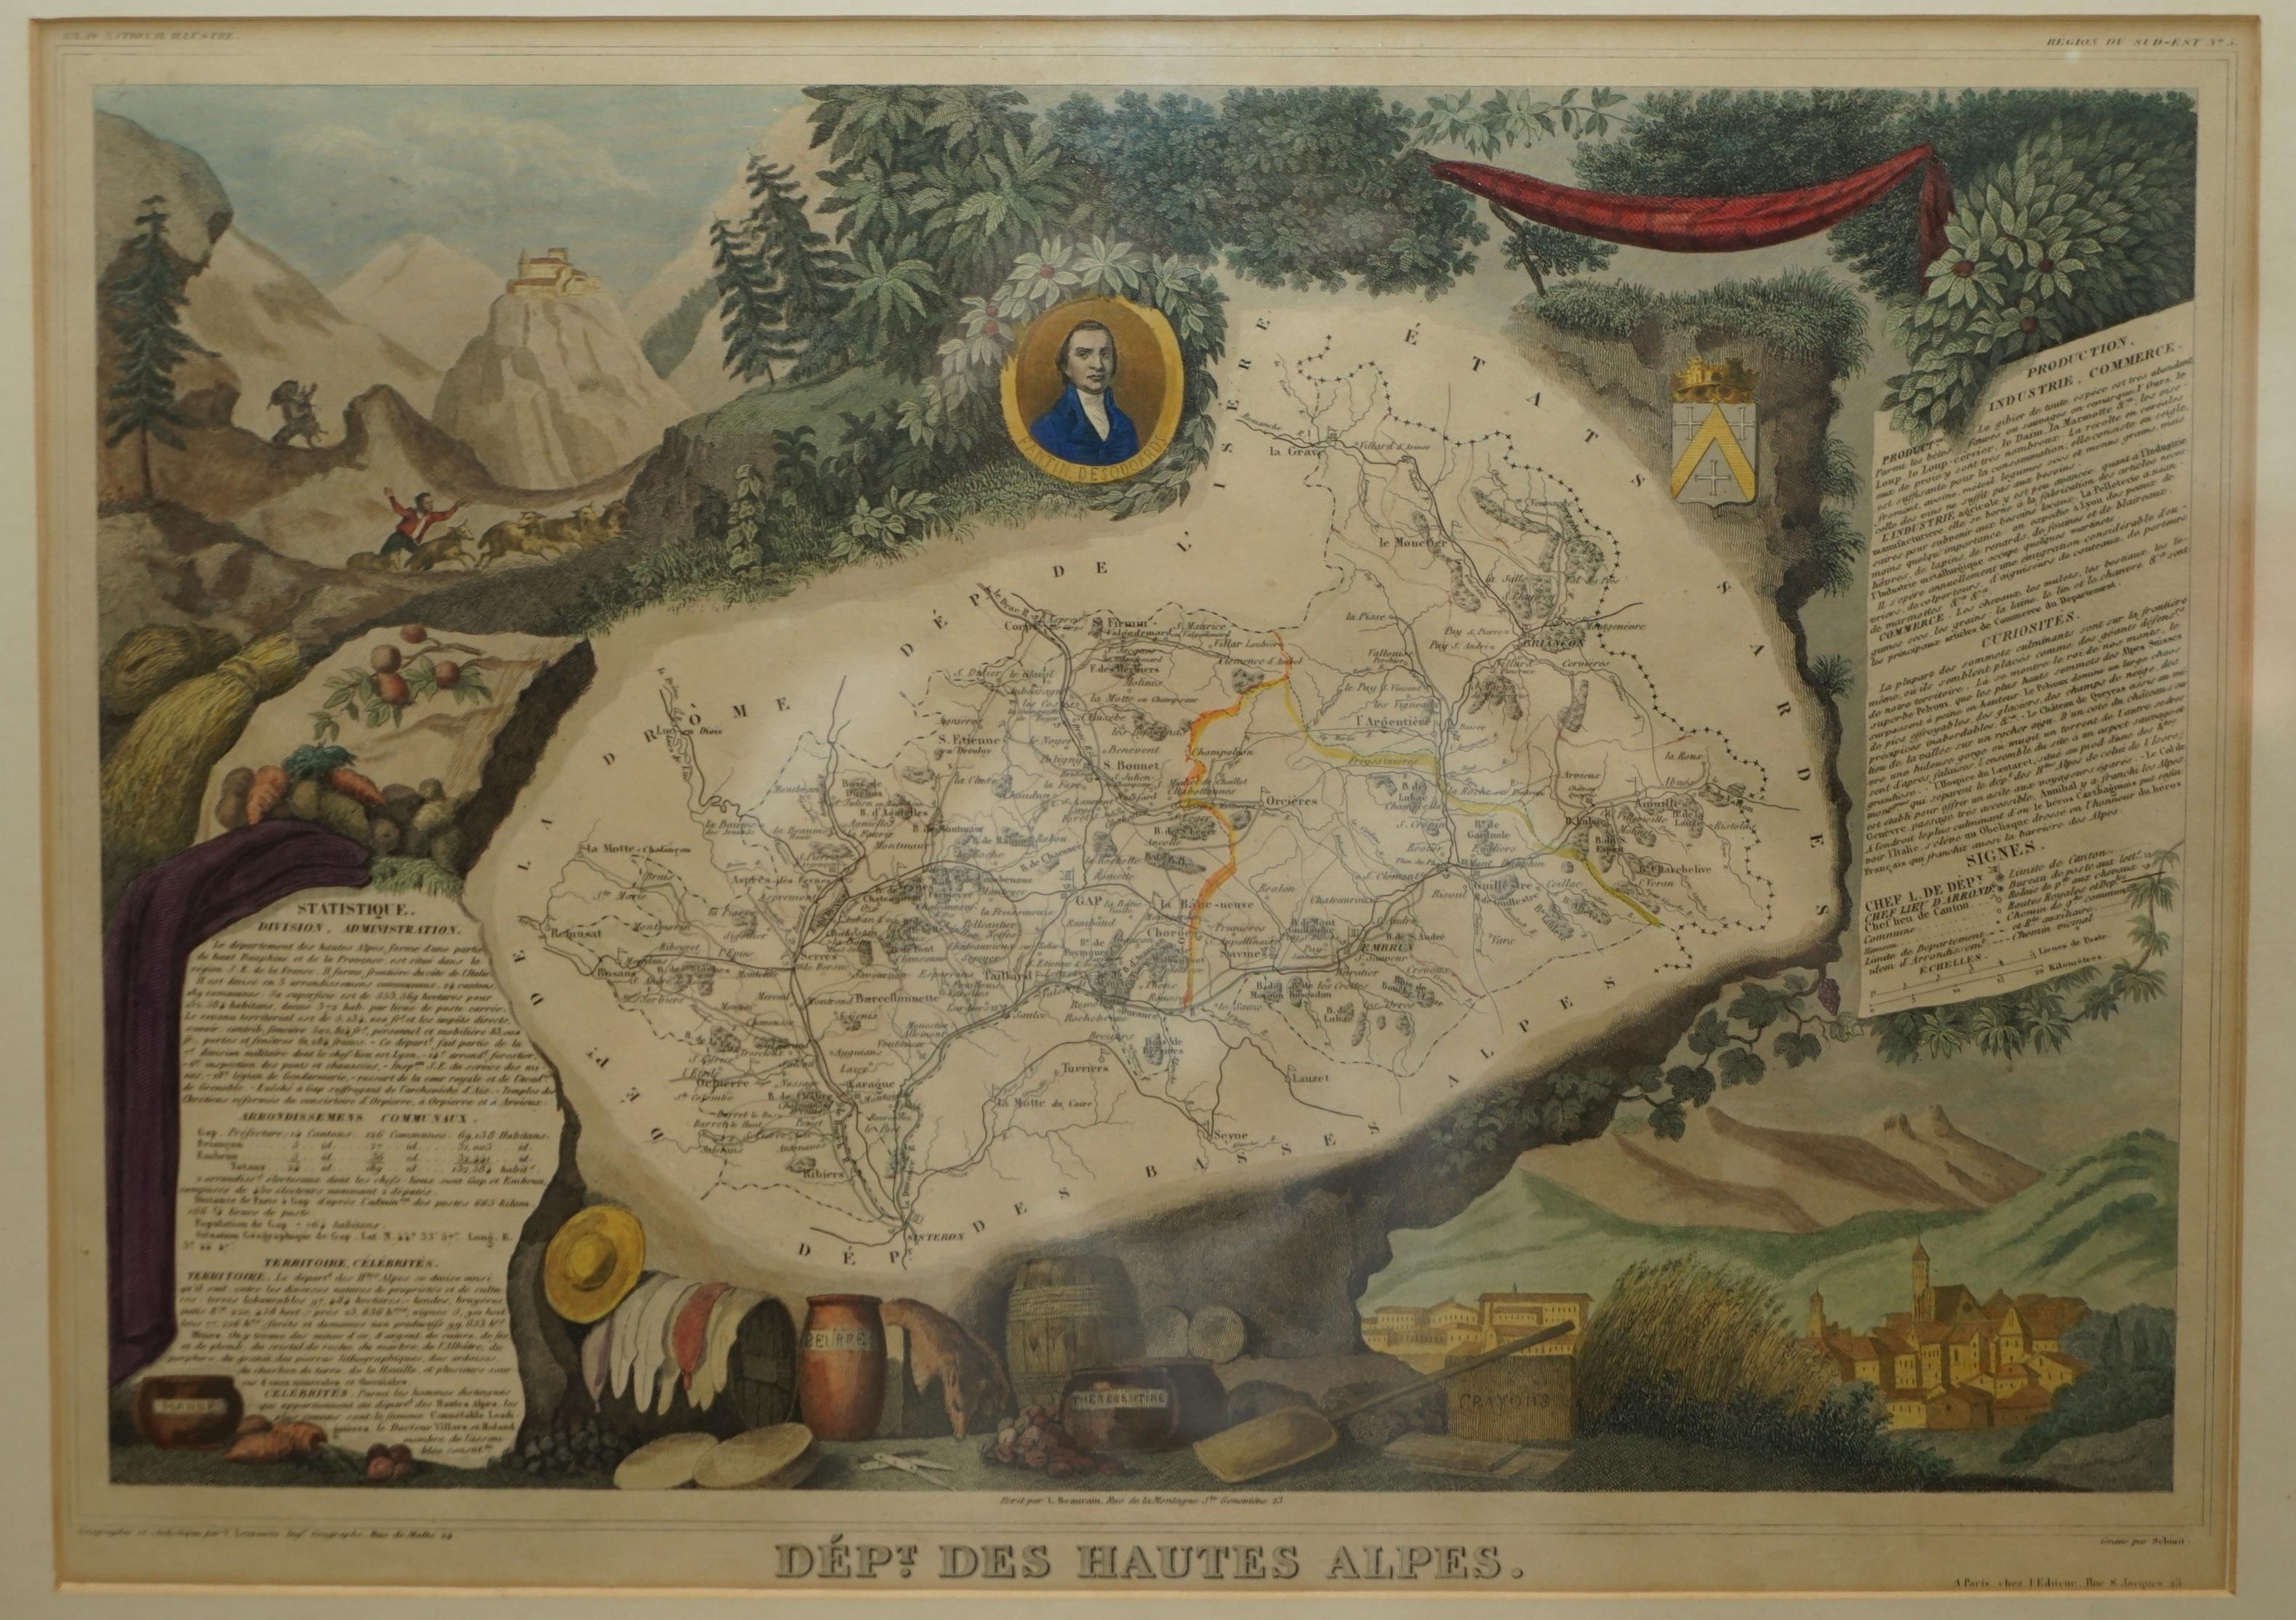 Nous sommes ravis d'offrir à la vente cette étonnante carte aquarelle de 1856 des Alpes autrichiennes intitulée Dept Des Hautes Alpes tirée de l'Atlas National Illustre de Victor Levasseur

Il a été publié à Paris par A. Combette en 1856. Cette